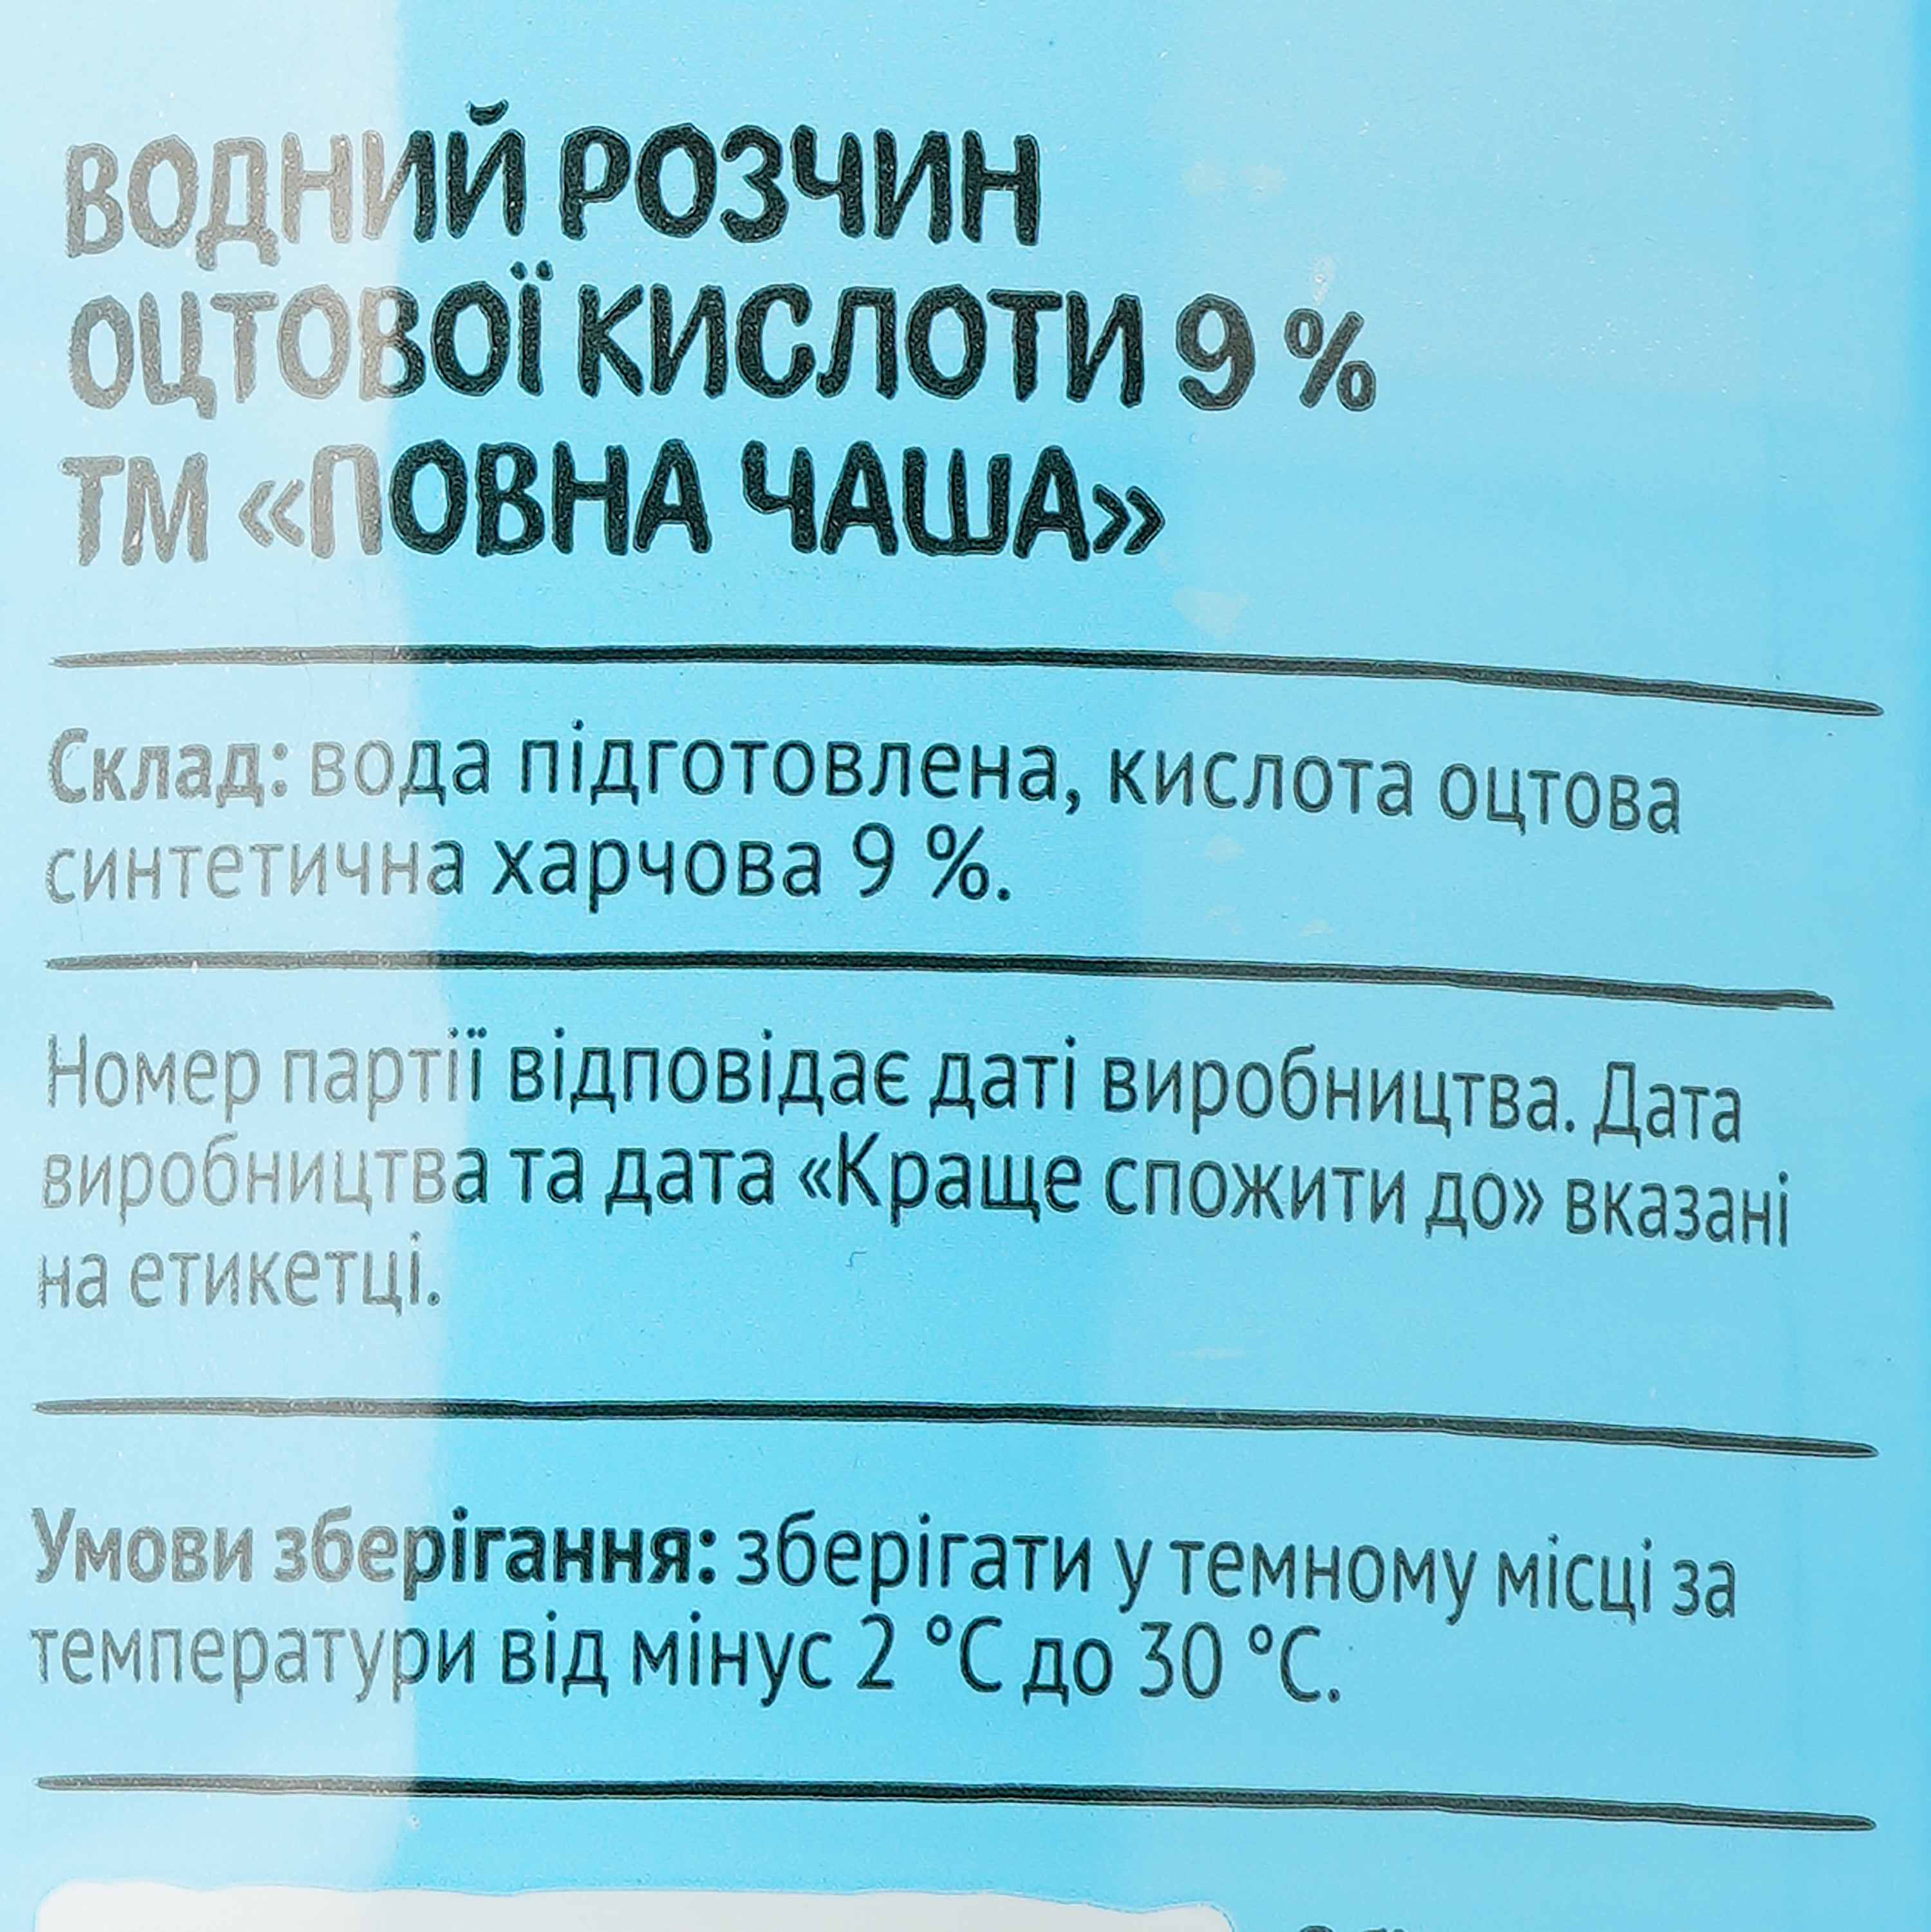 Раствор уксусной кислоты Повна Чаша 9%, 900 мл - фото 3